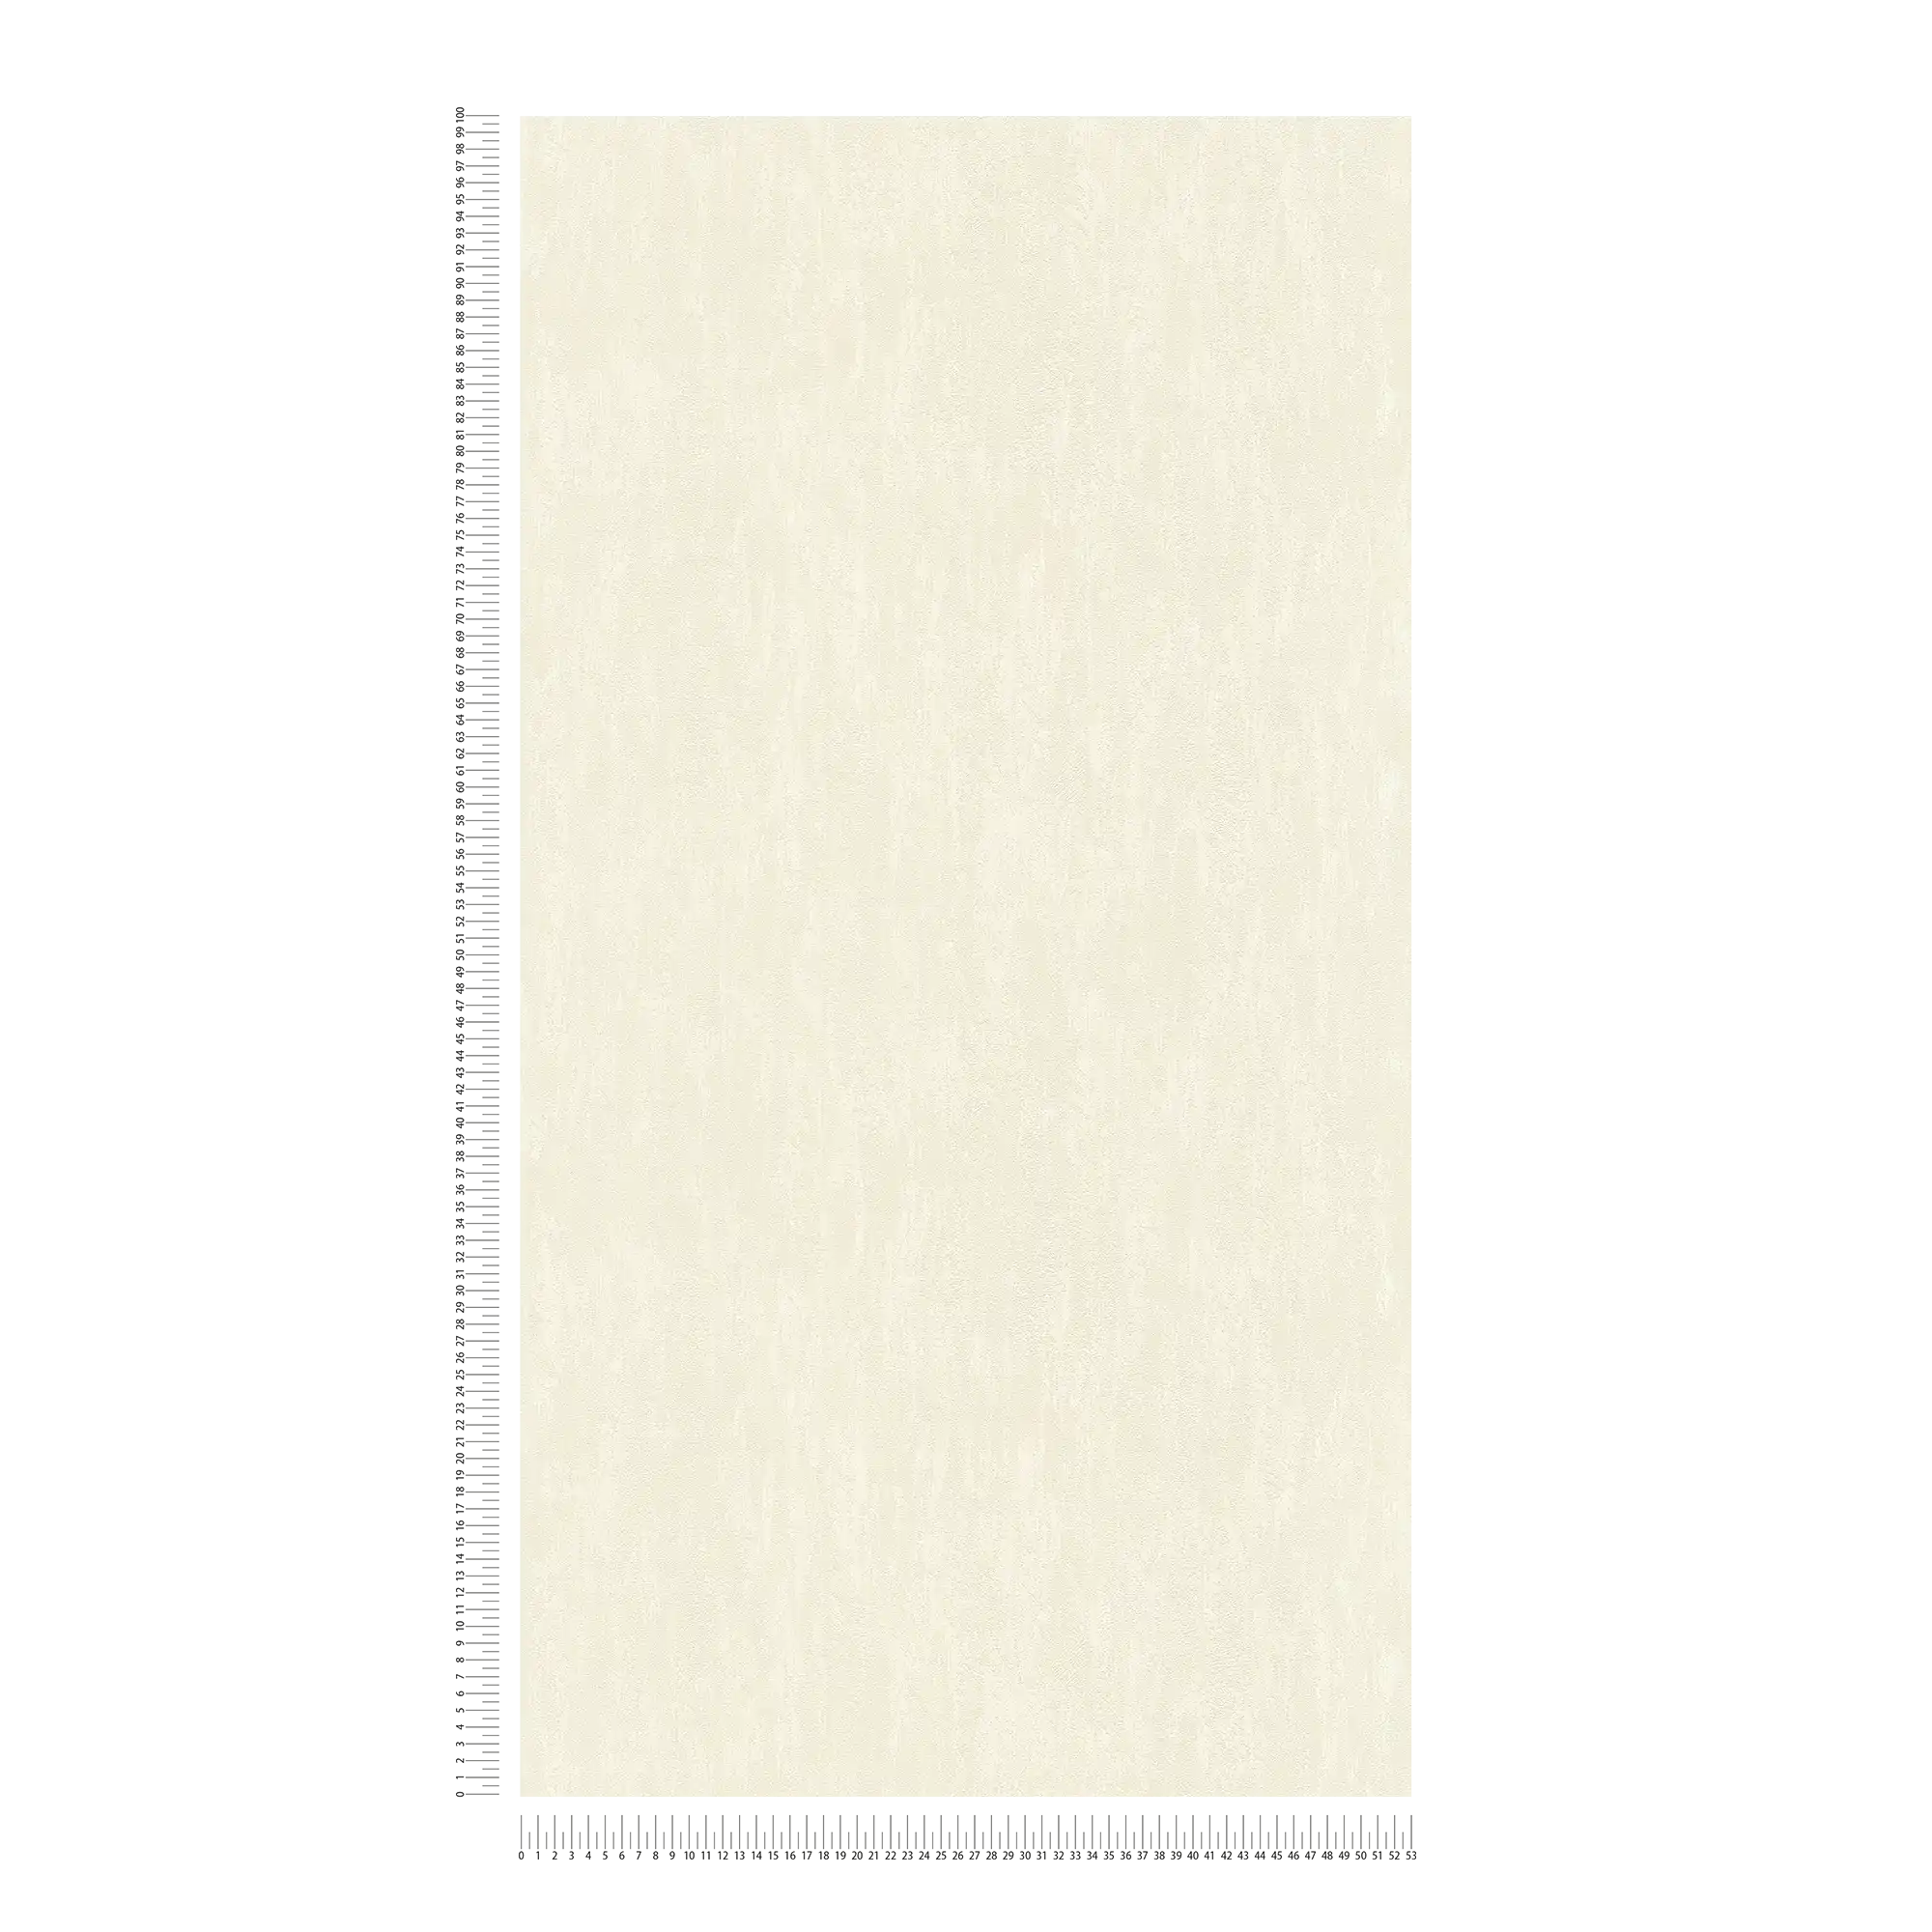             Papel pintado neutro con aspecto de yeso - crema
        